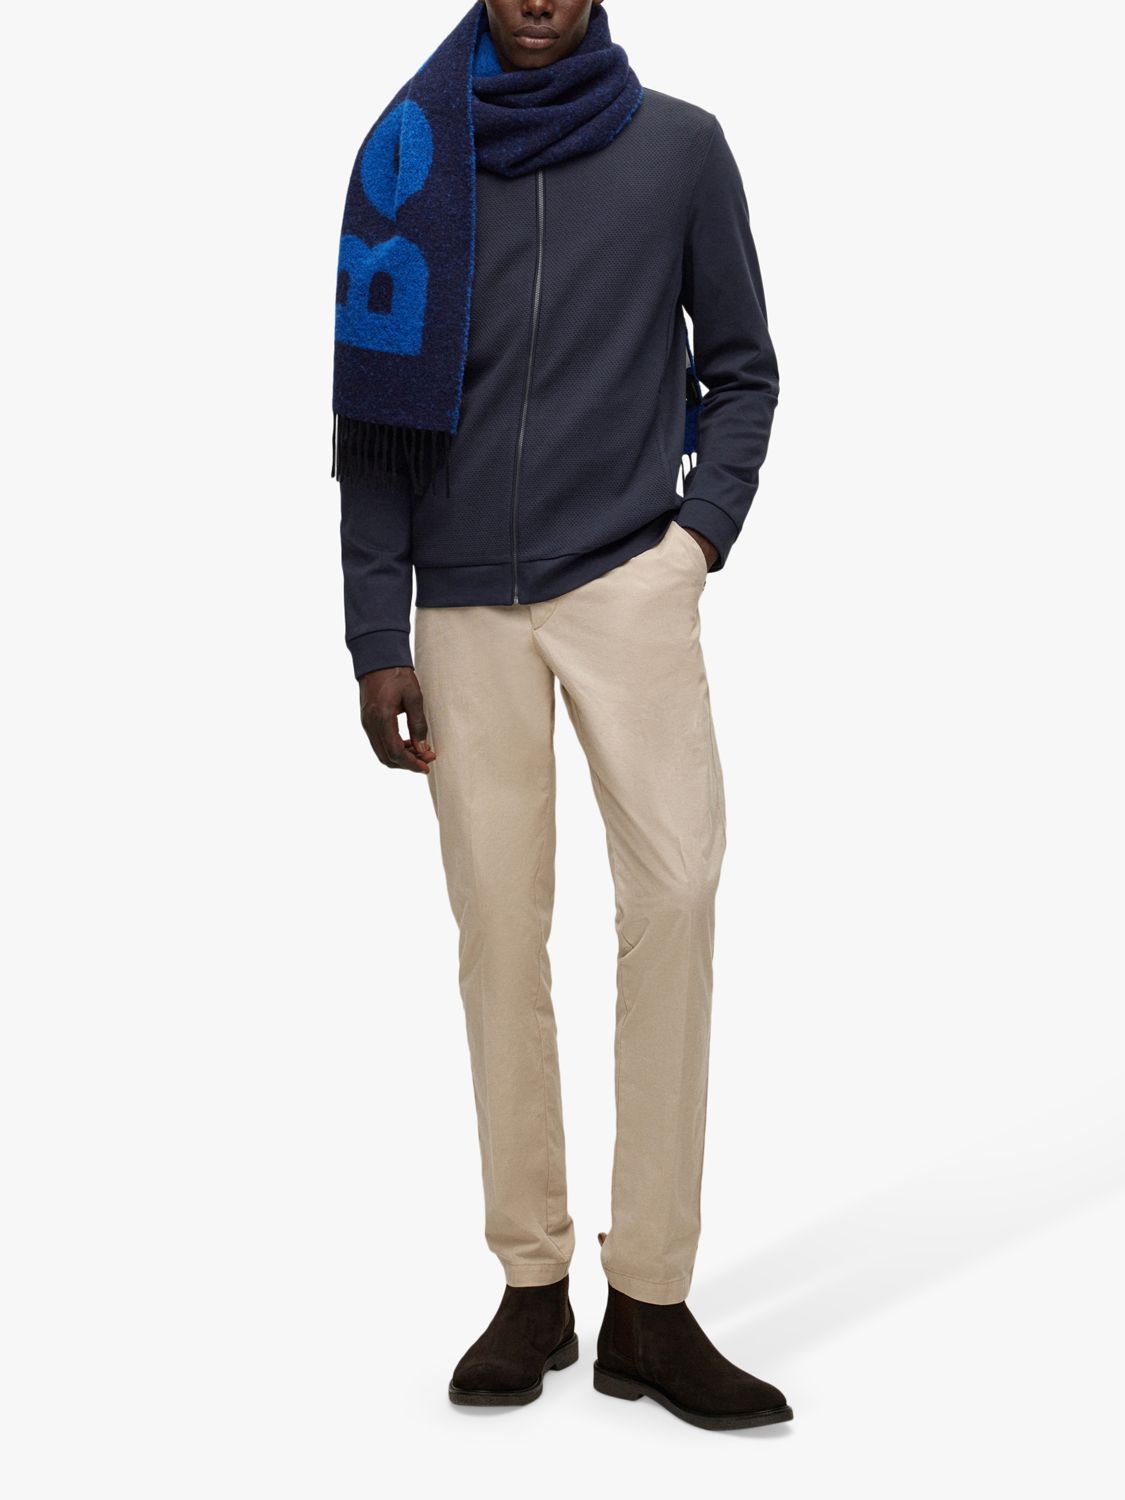 BOSS Skiles Zip Through Sweatshirt, Dark Blue, S